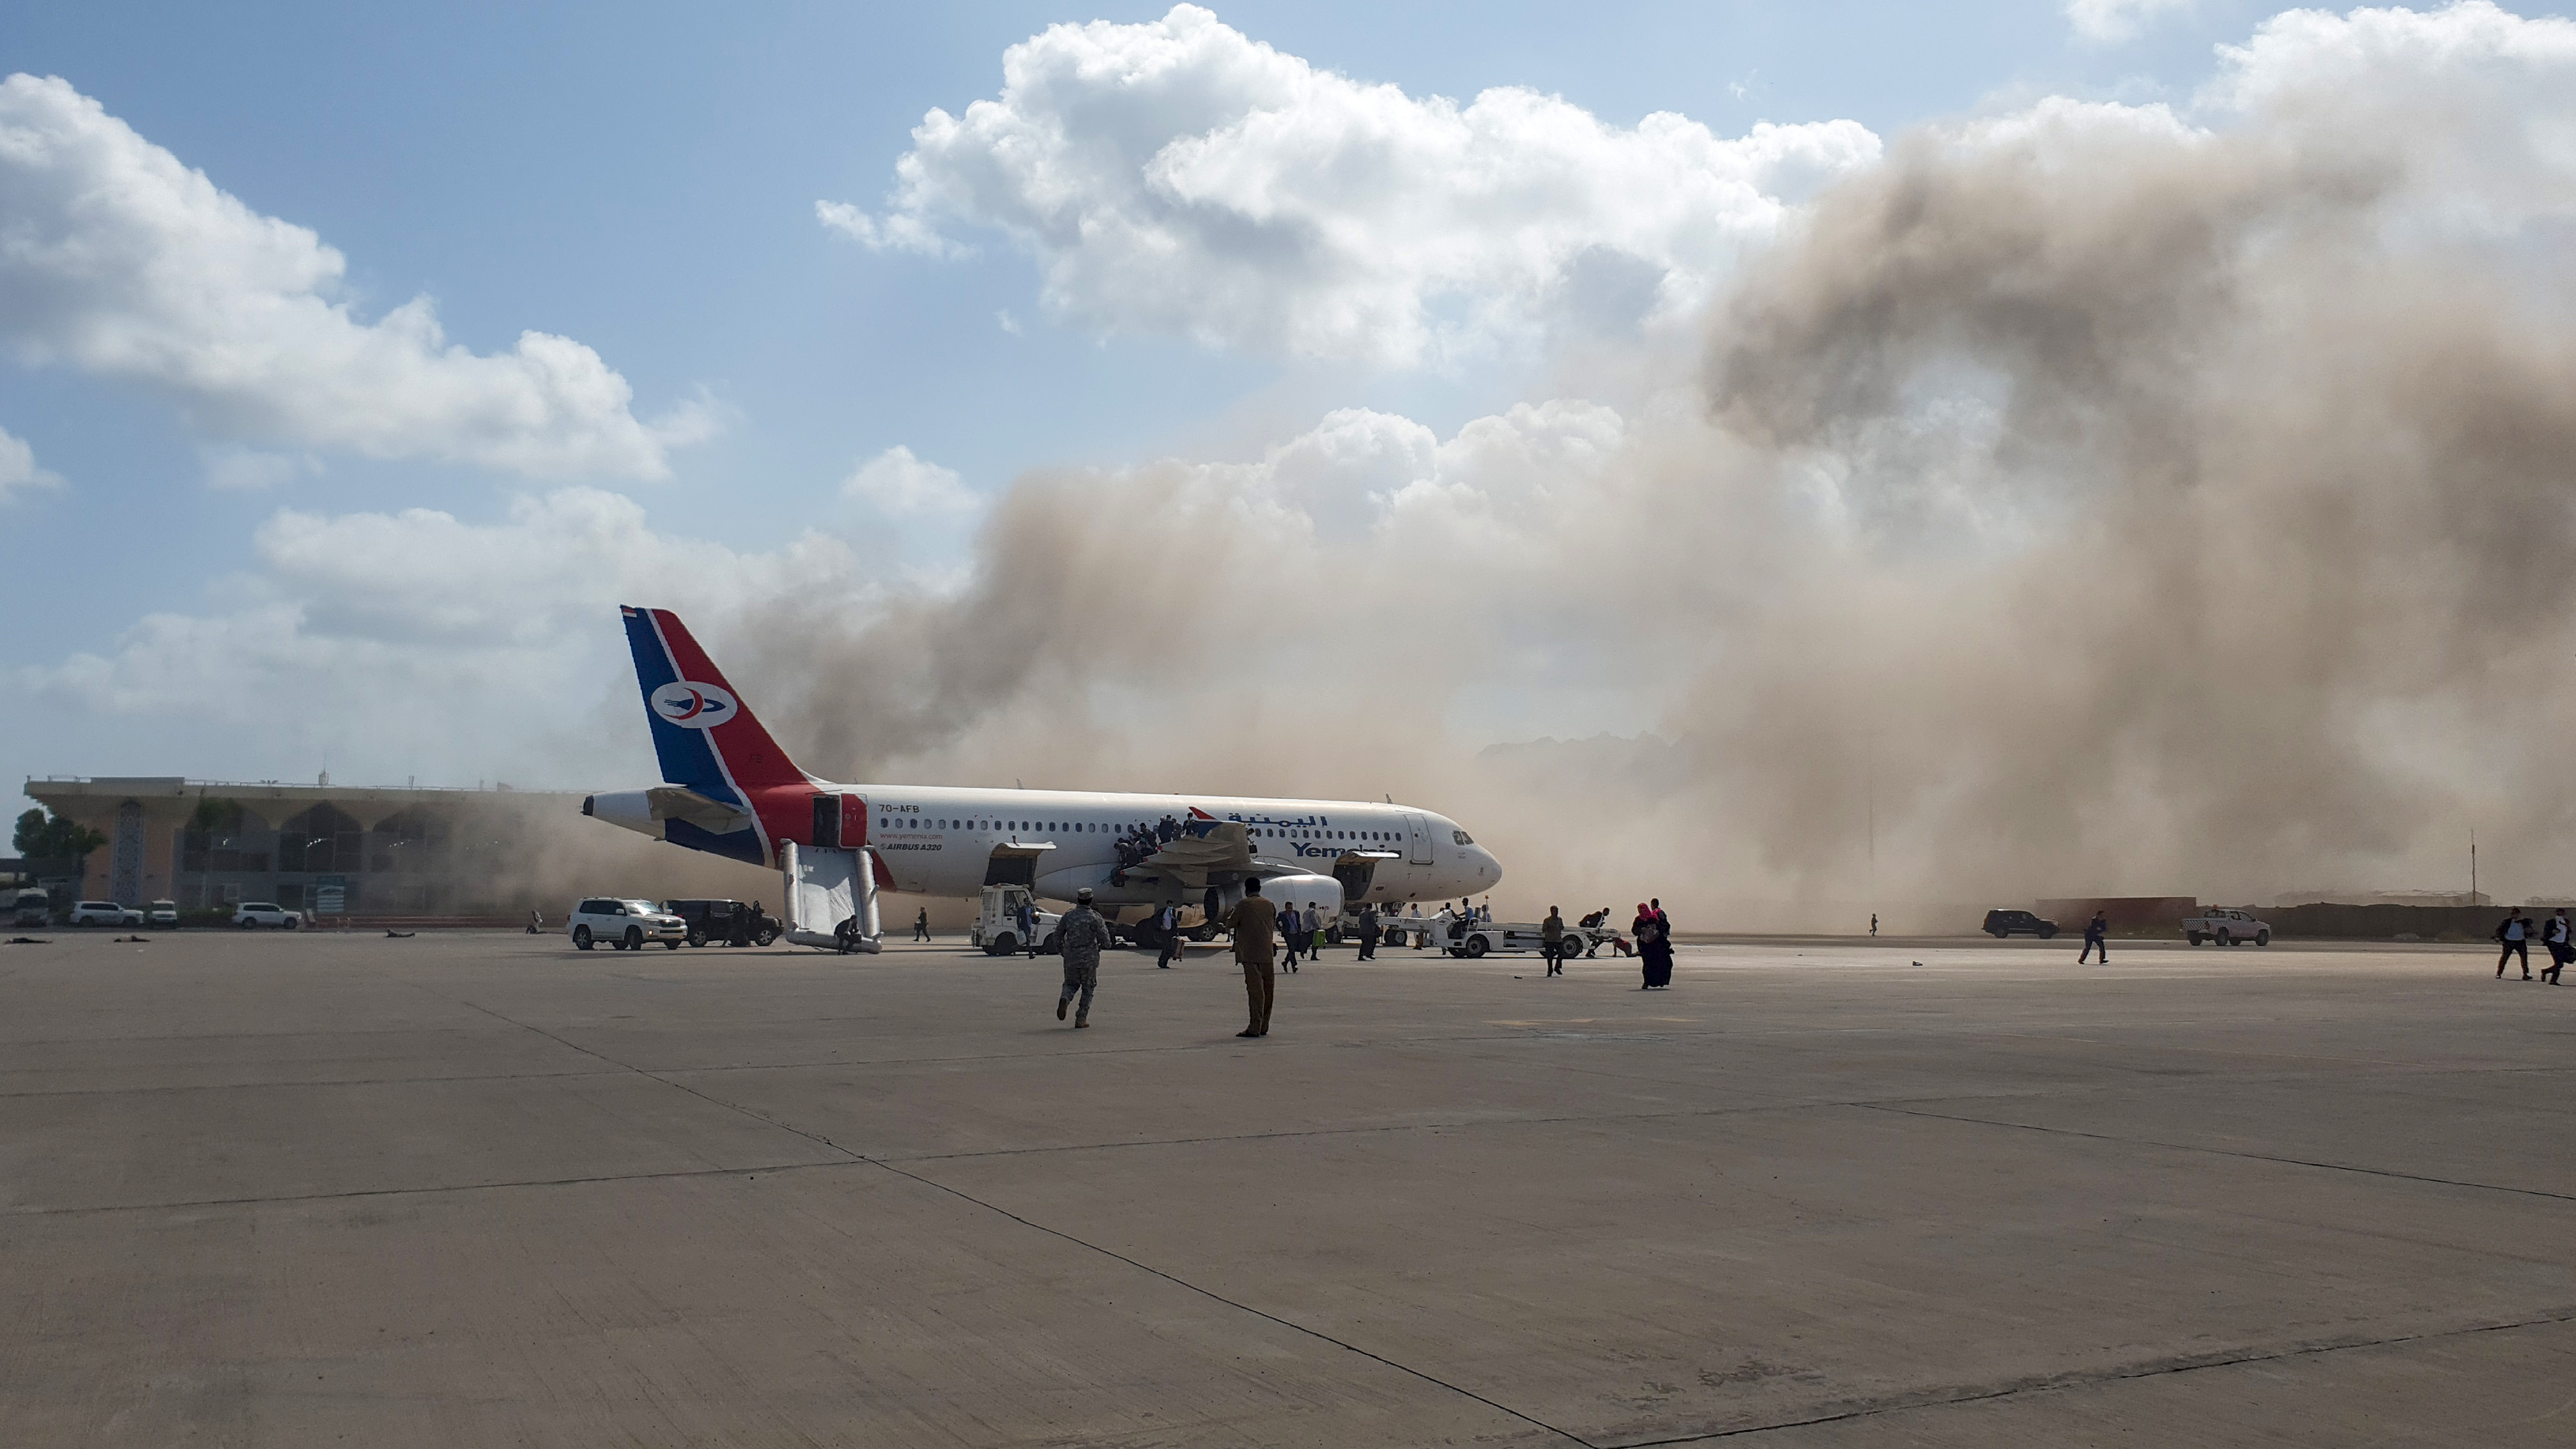 Aeropuerto de Aden, Yemen, que fue atacado este 30 de diciembre luego del aterrizaje de un avión con funcionarios estatales. El incidente dejó al menos 16 muertos. (Foto Prensa Libre: AFP)